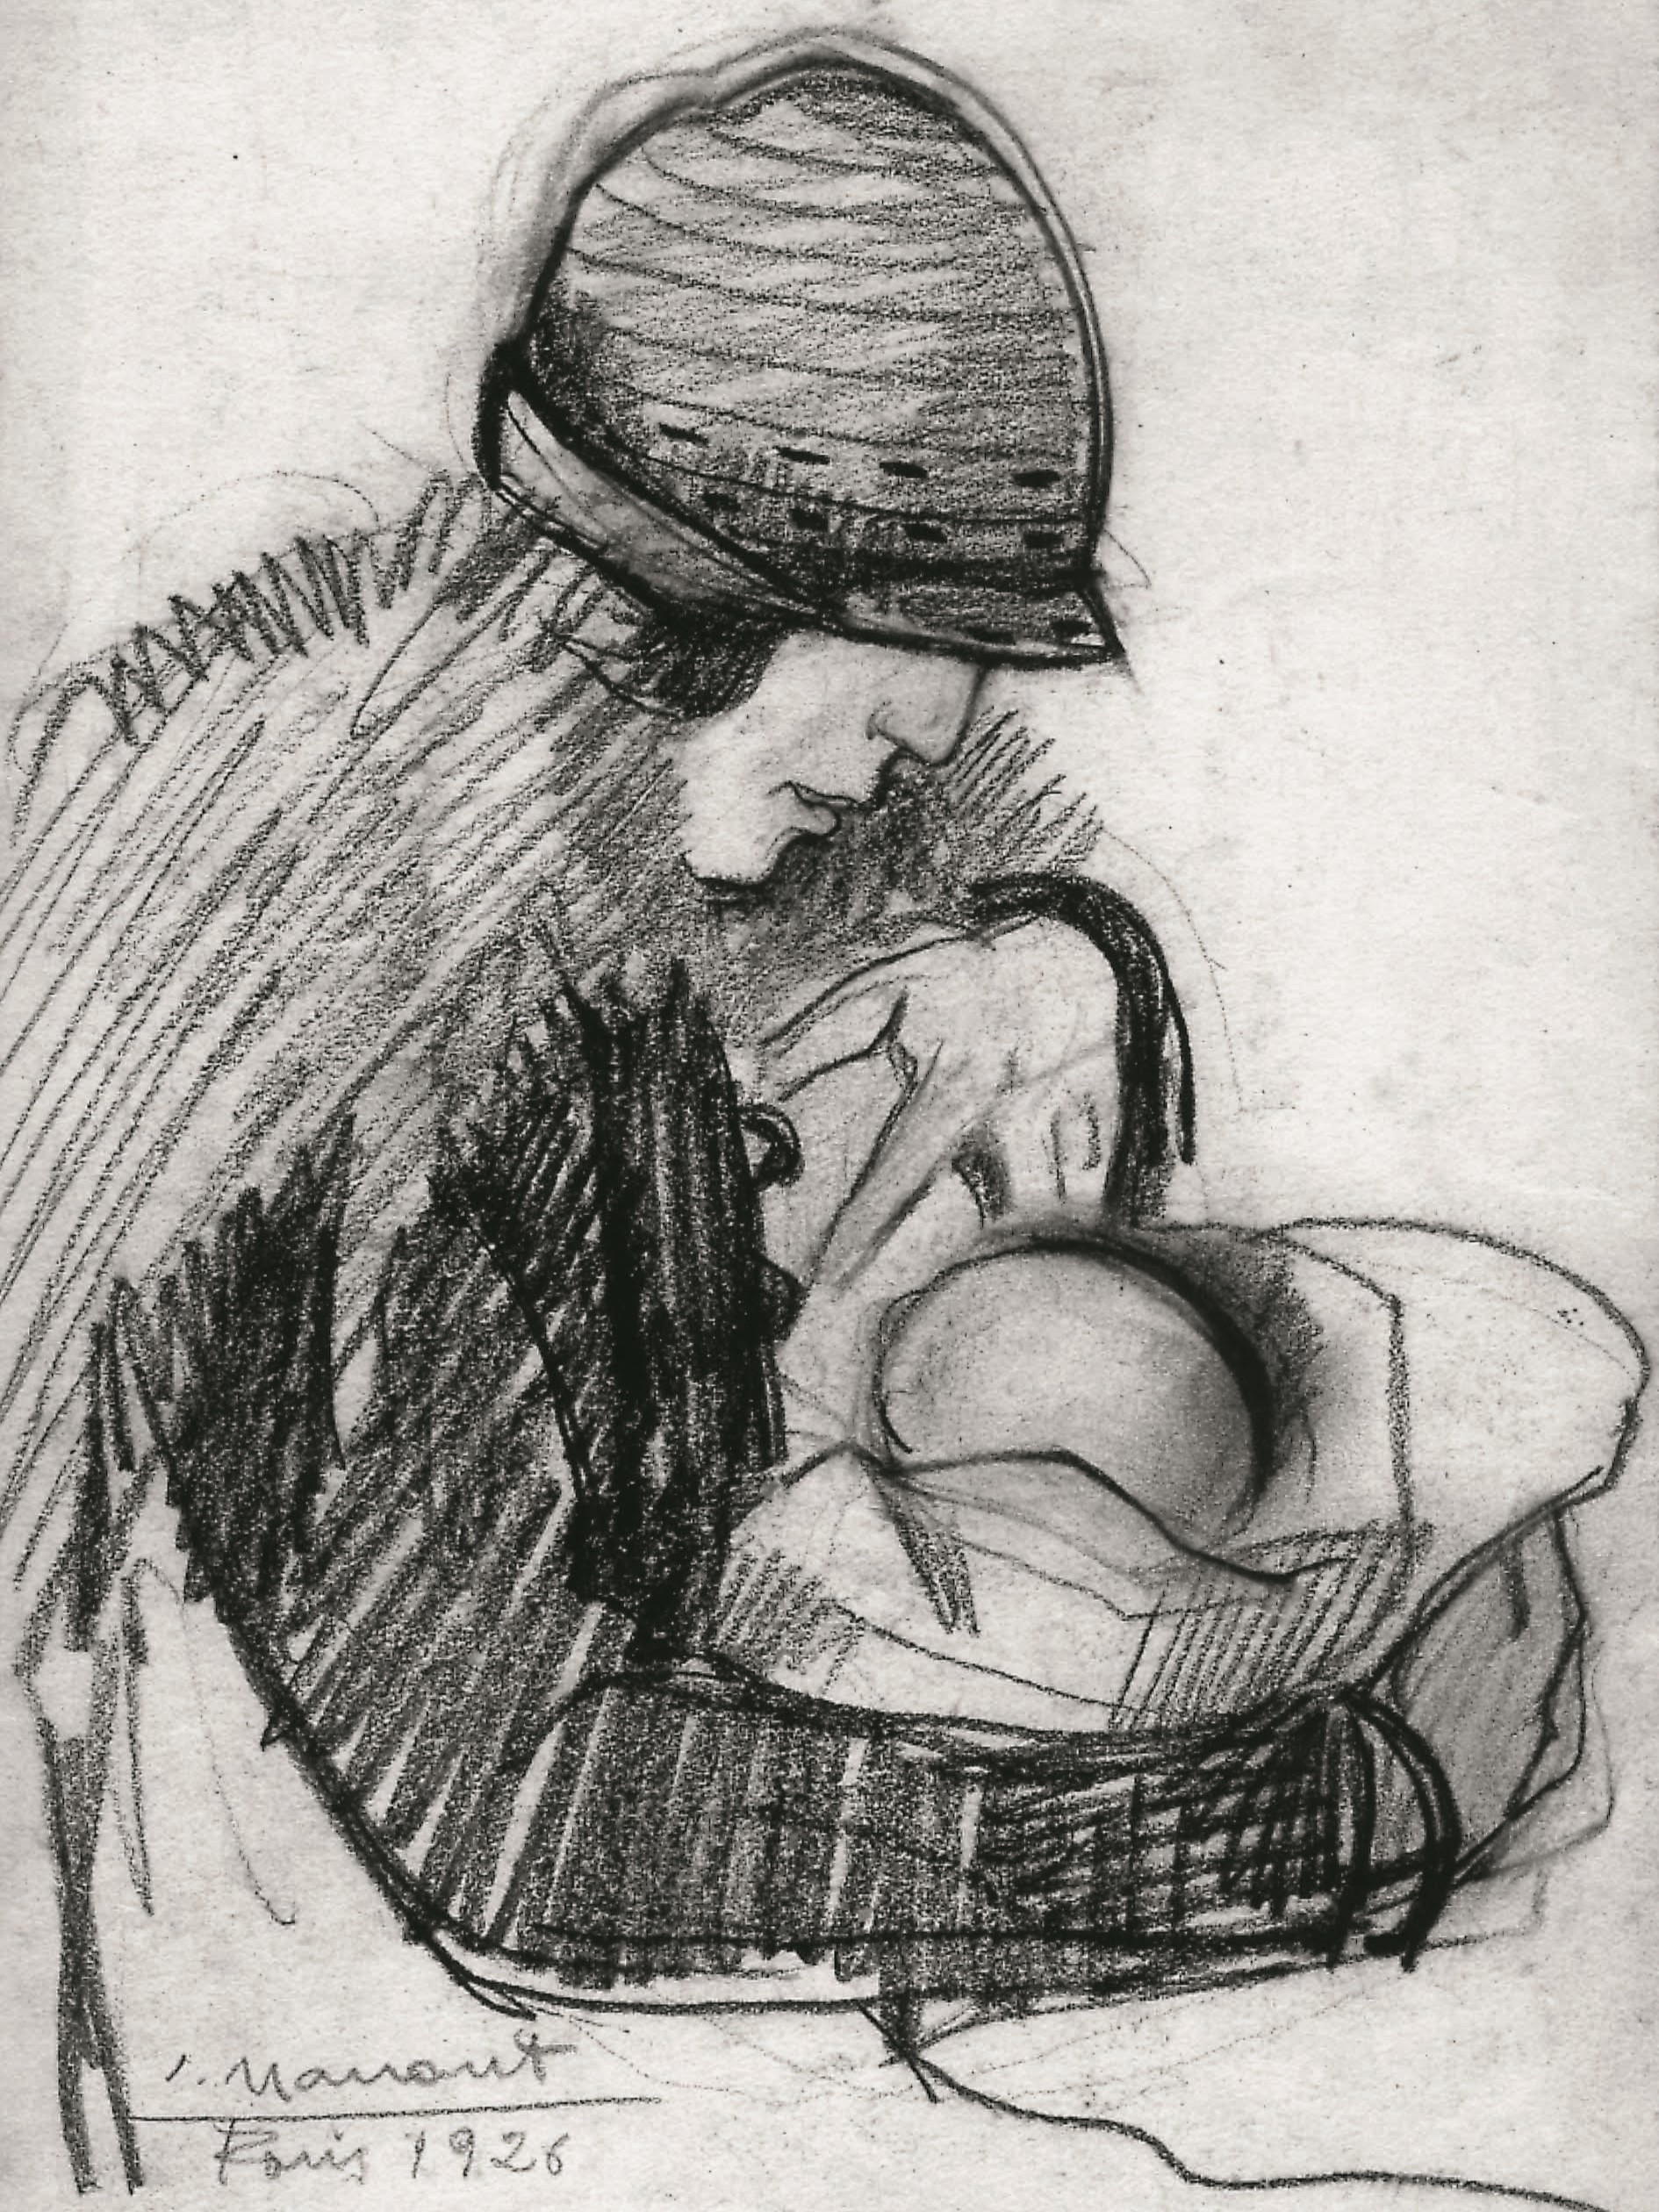 Dibujo de José Manaut titulado Lita con Ariel bebé, 1926. Papel/carboncillo.